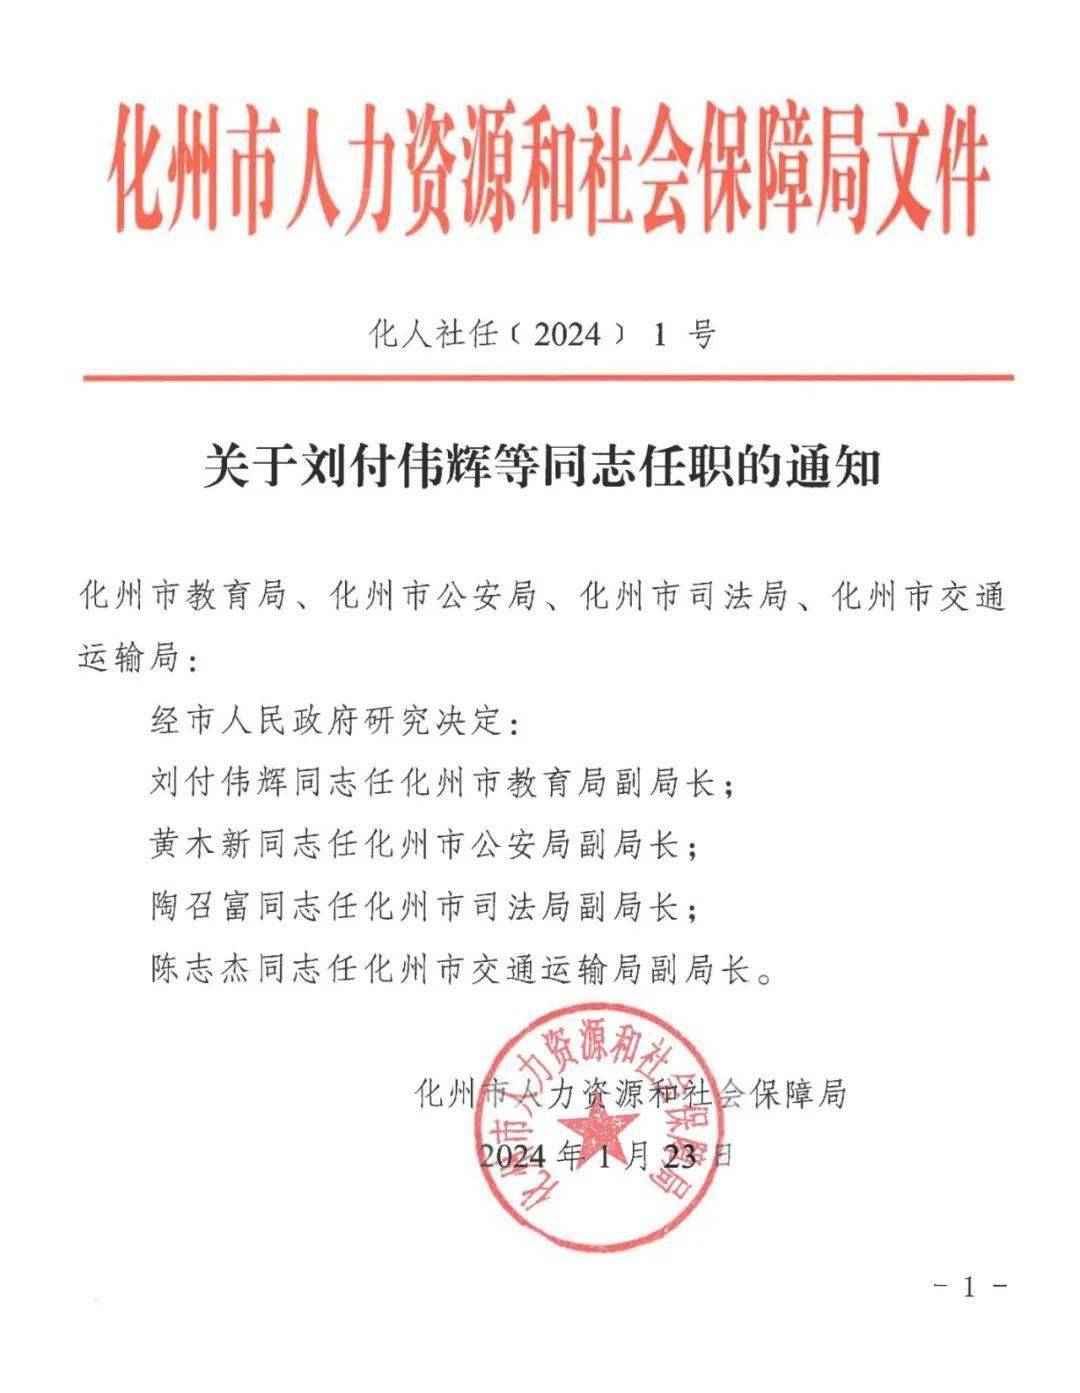 刘付伟辉同志任化州市教育局副局长;黄木新同志任化州市公安局副局长